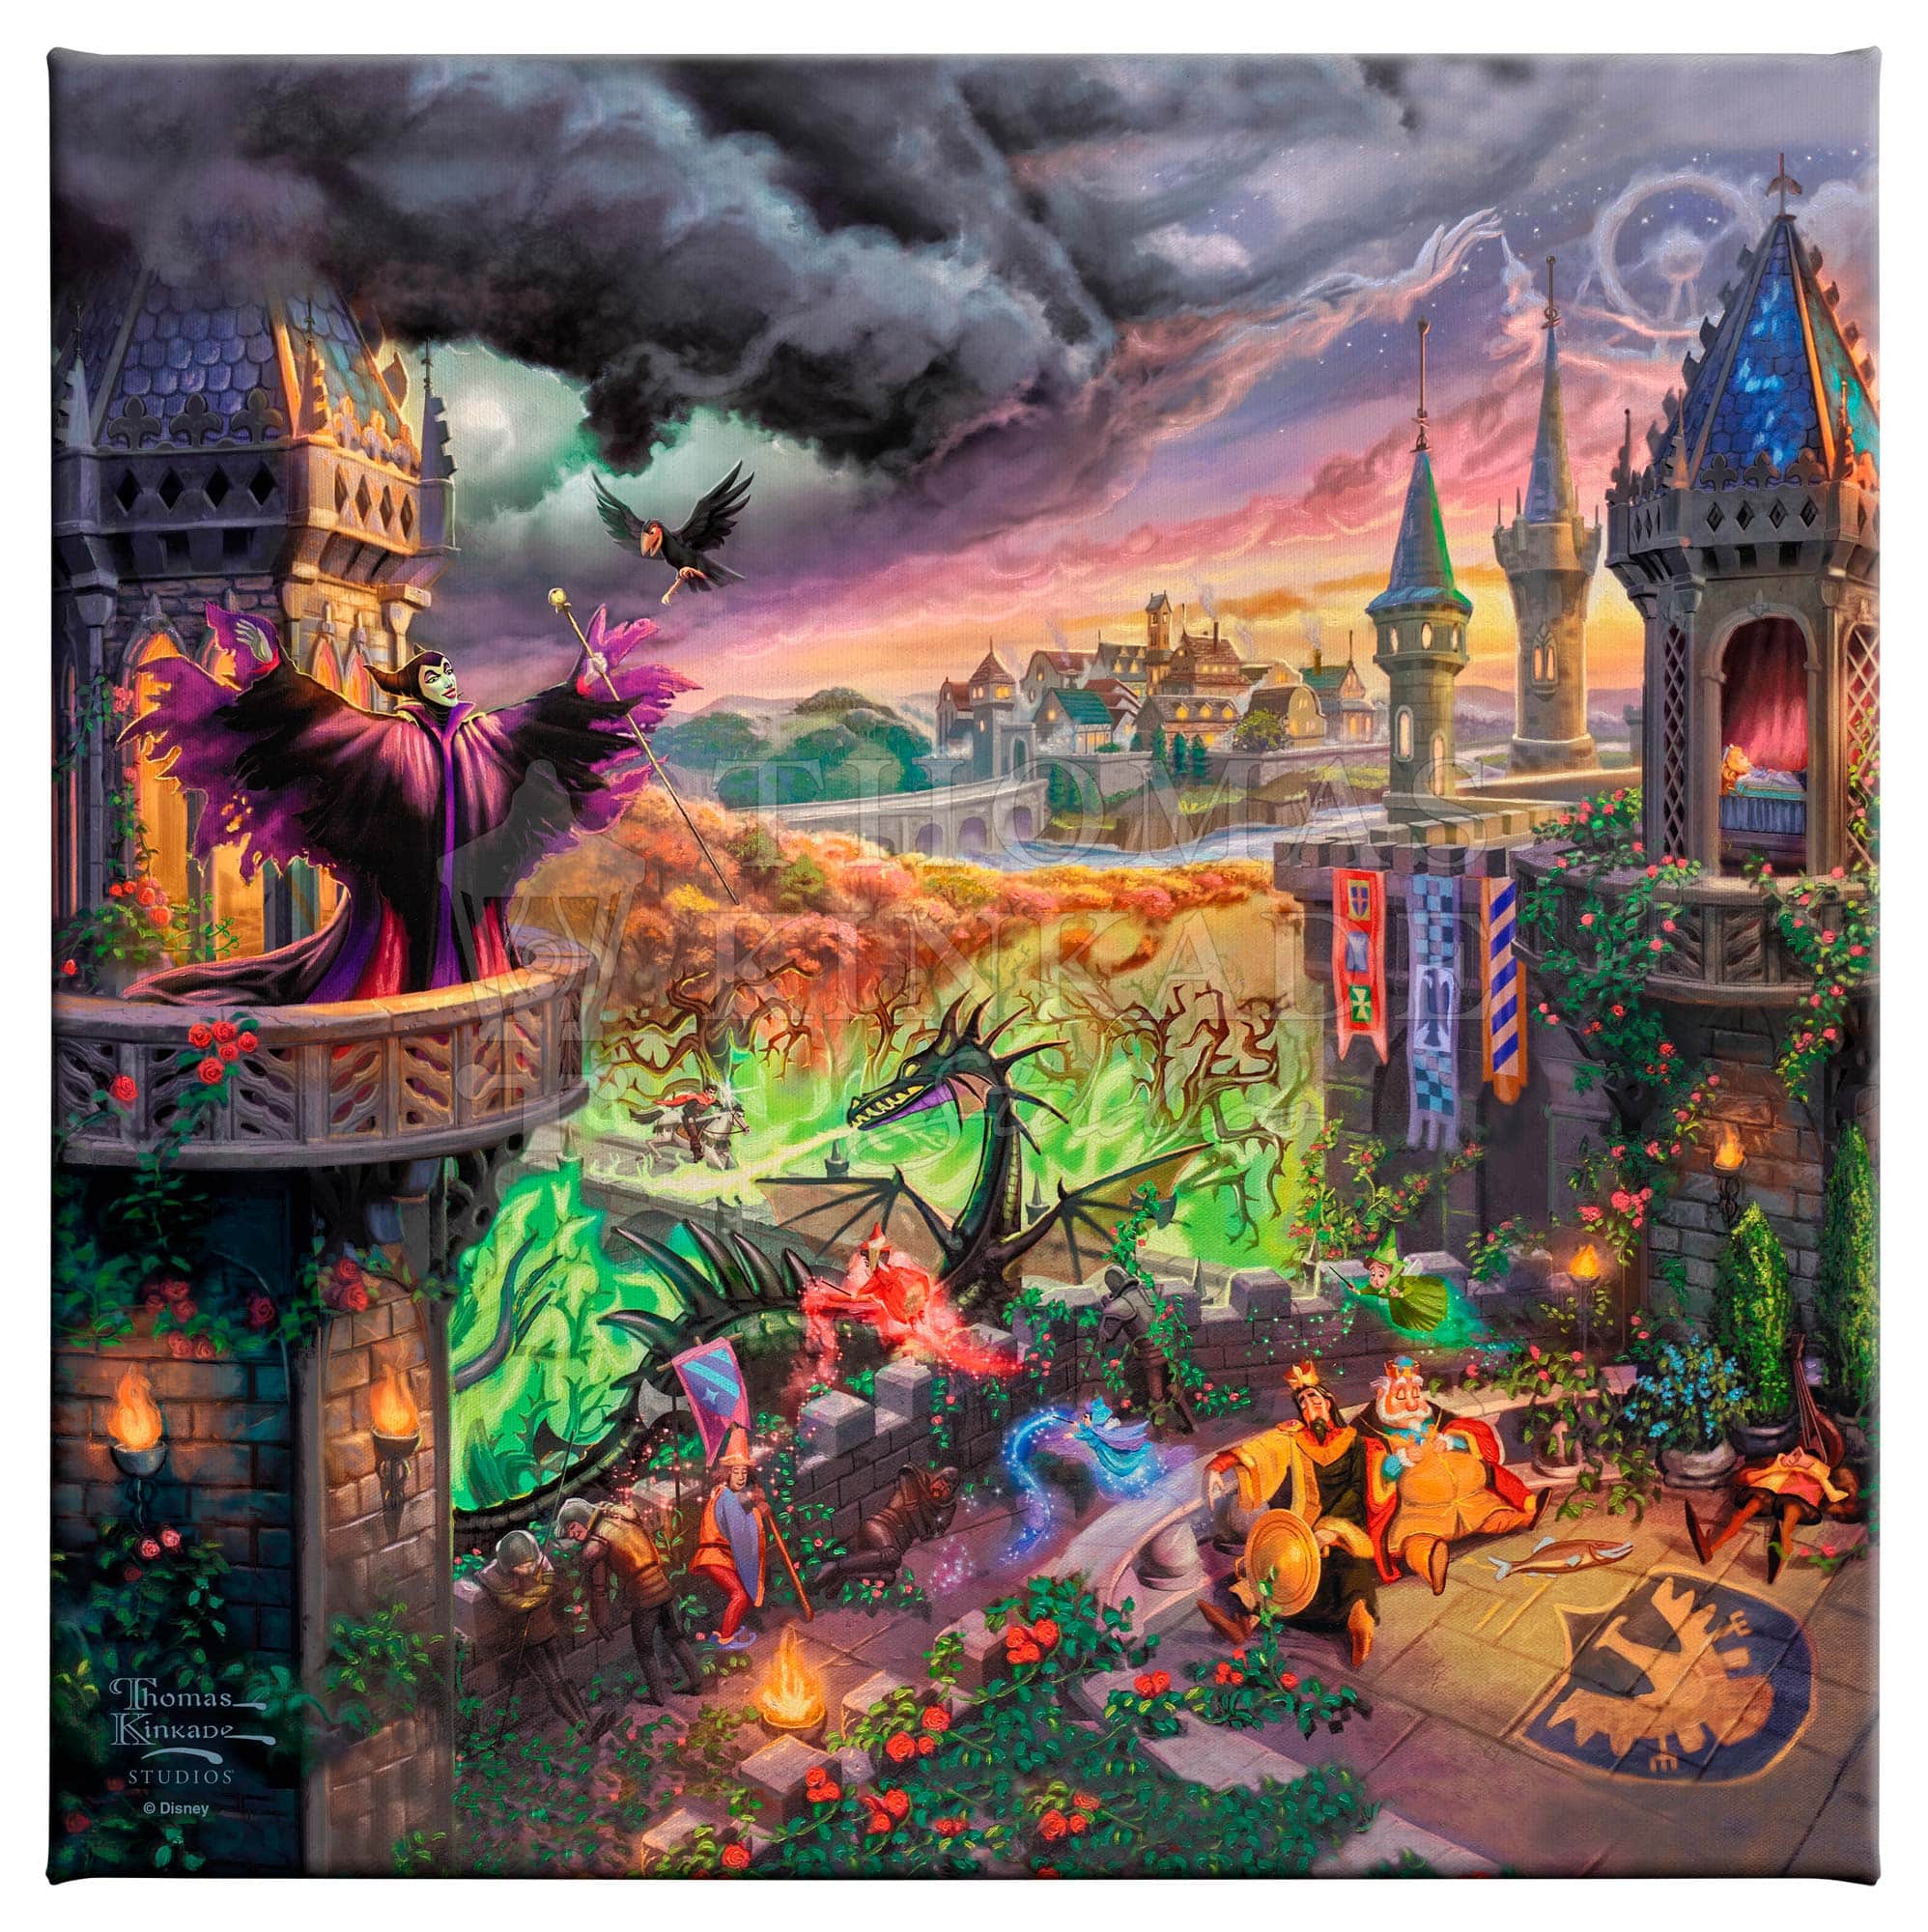 Thomas Kinkade, Disney, Maleficent , 1000 Piece Jigsaw Puzzle